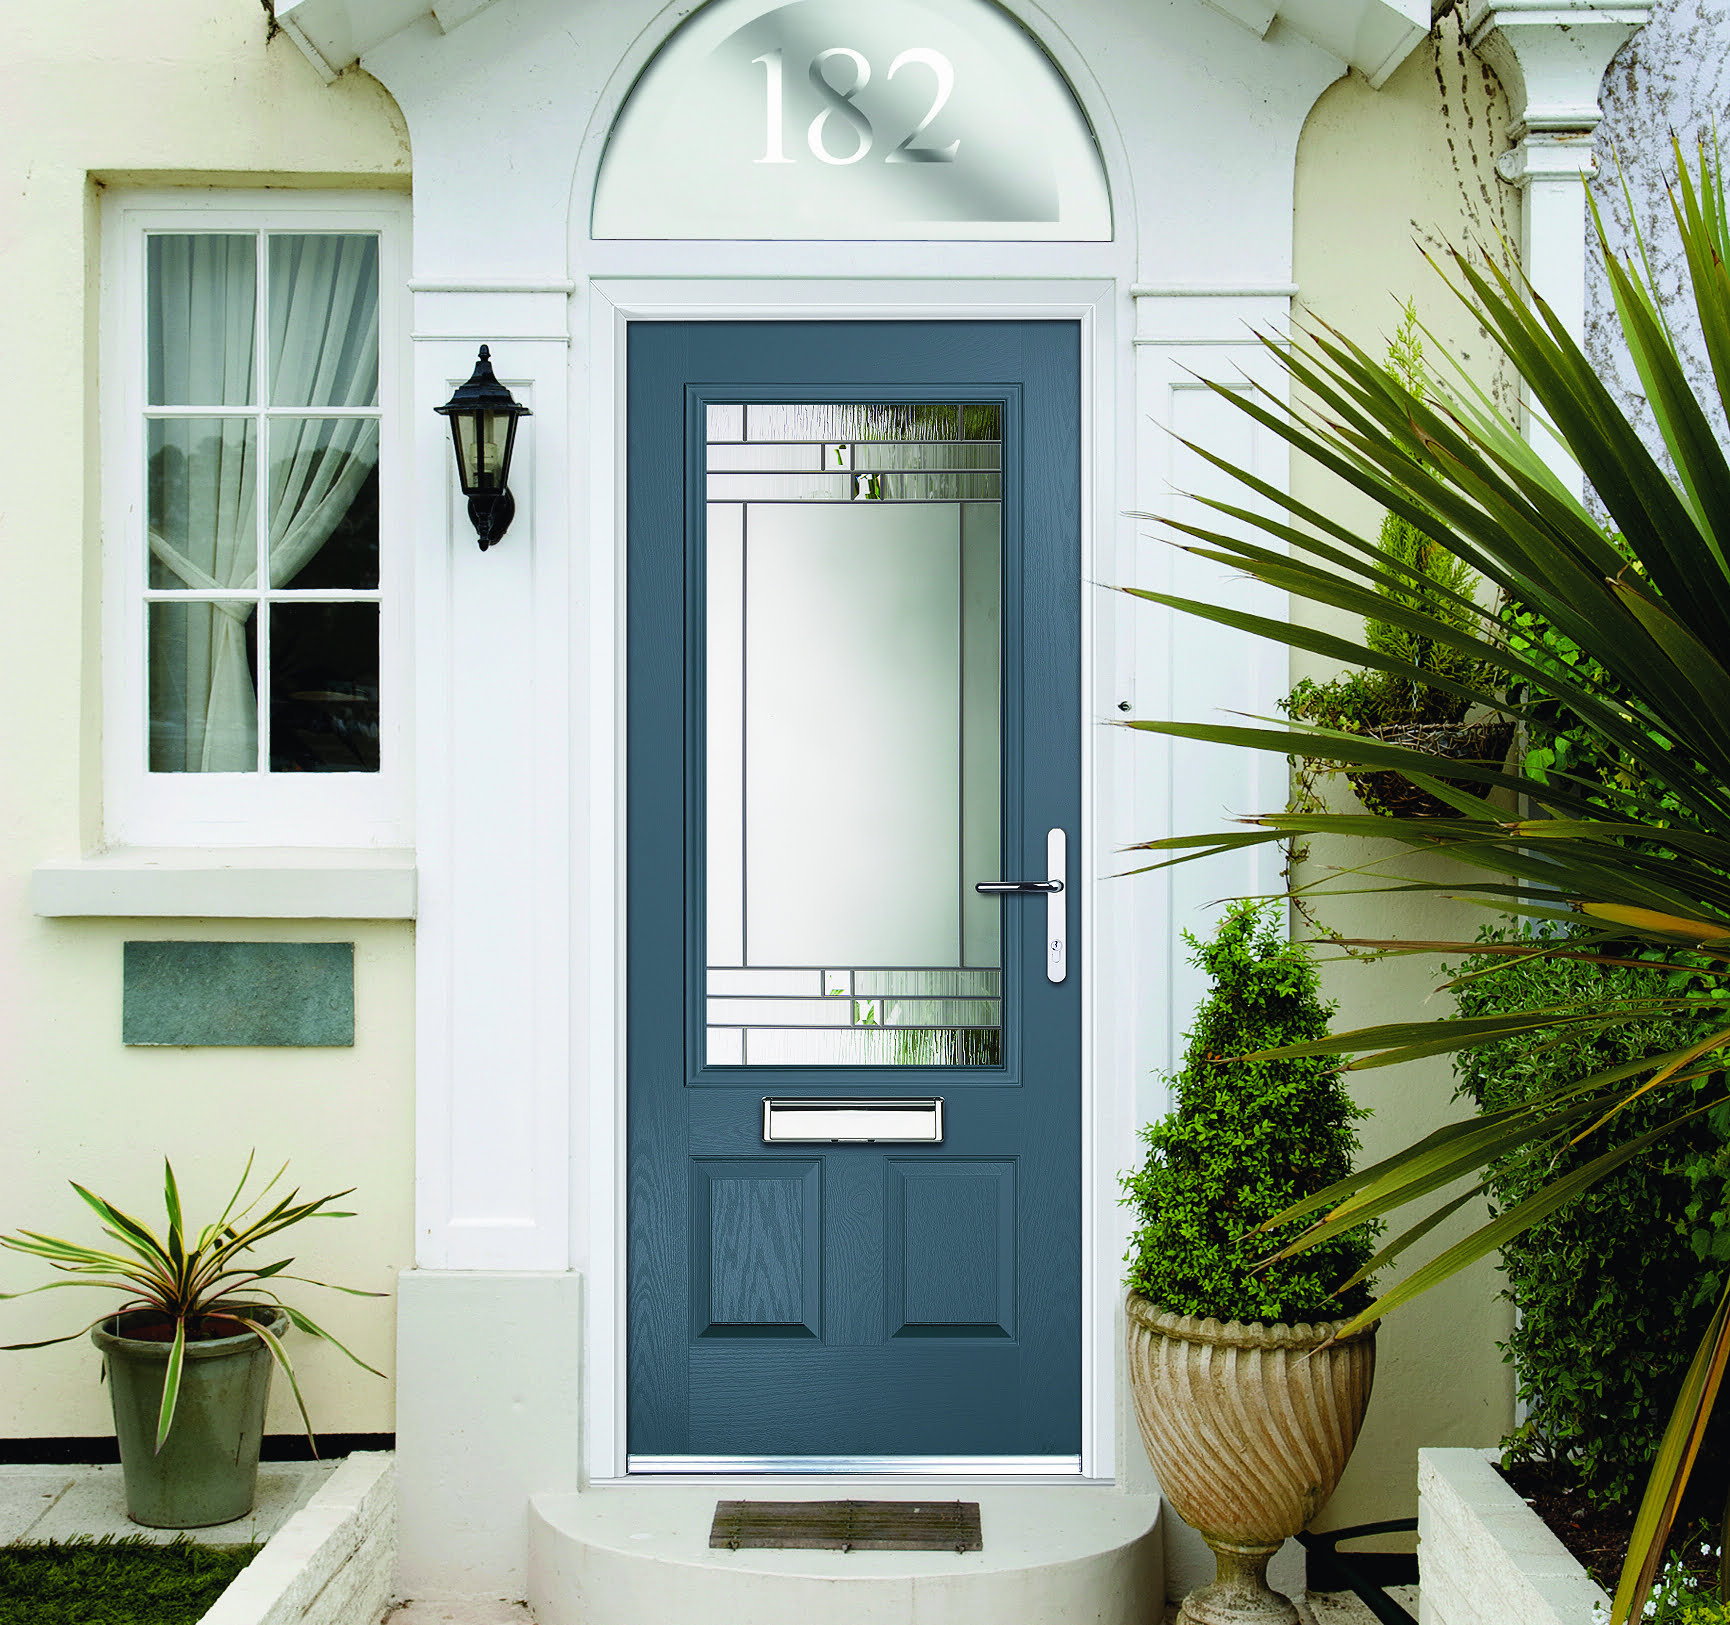 A blue composite door